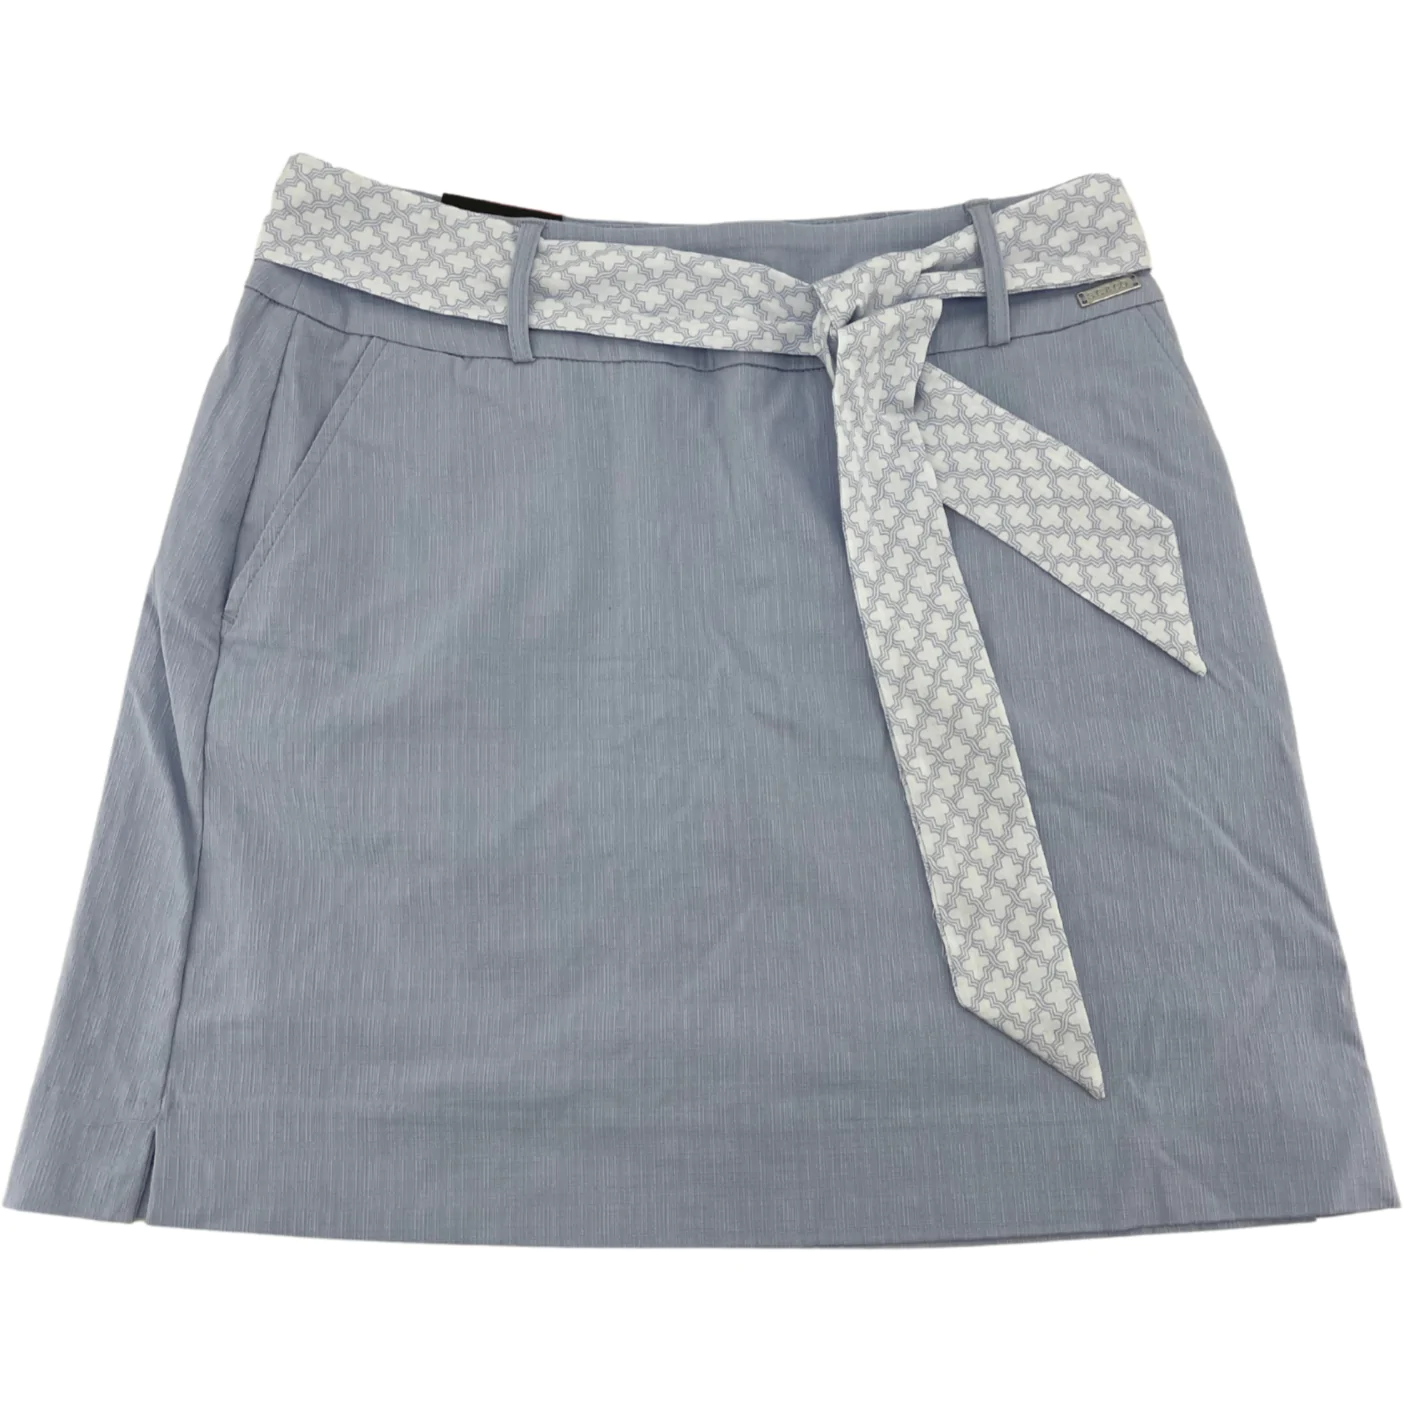 S.C & Co. Women's Skort / Skirt with Belt / Light Blue / Various Sizes